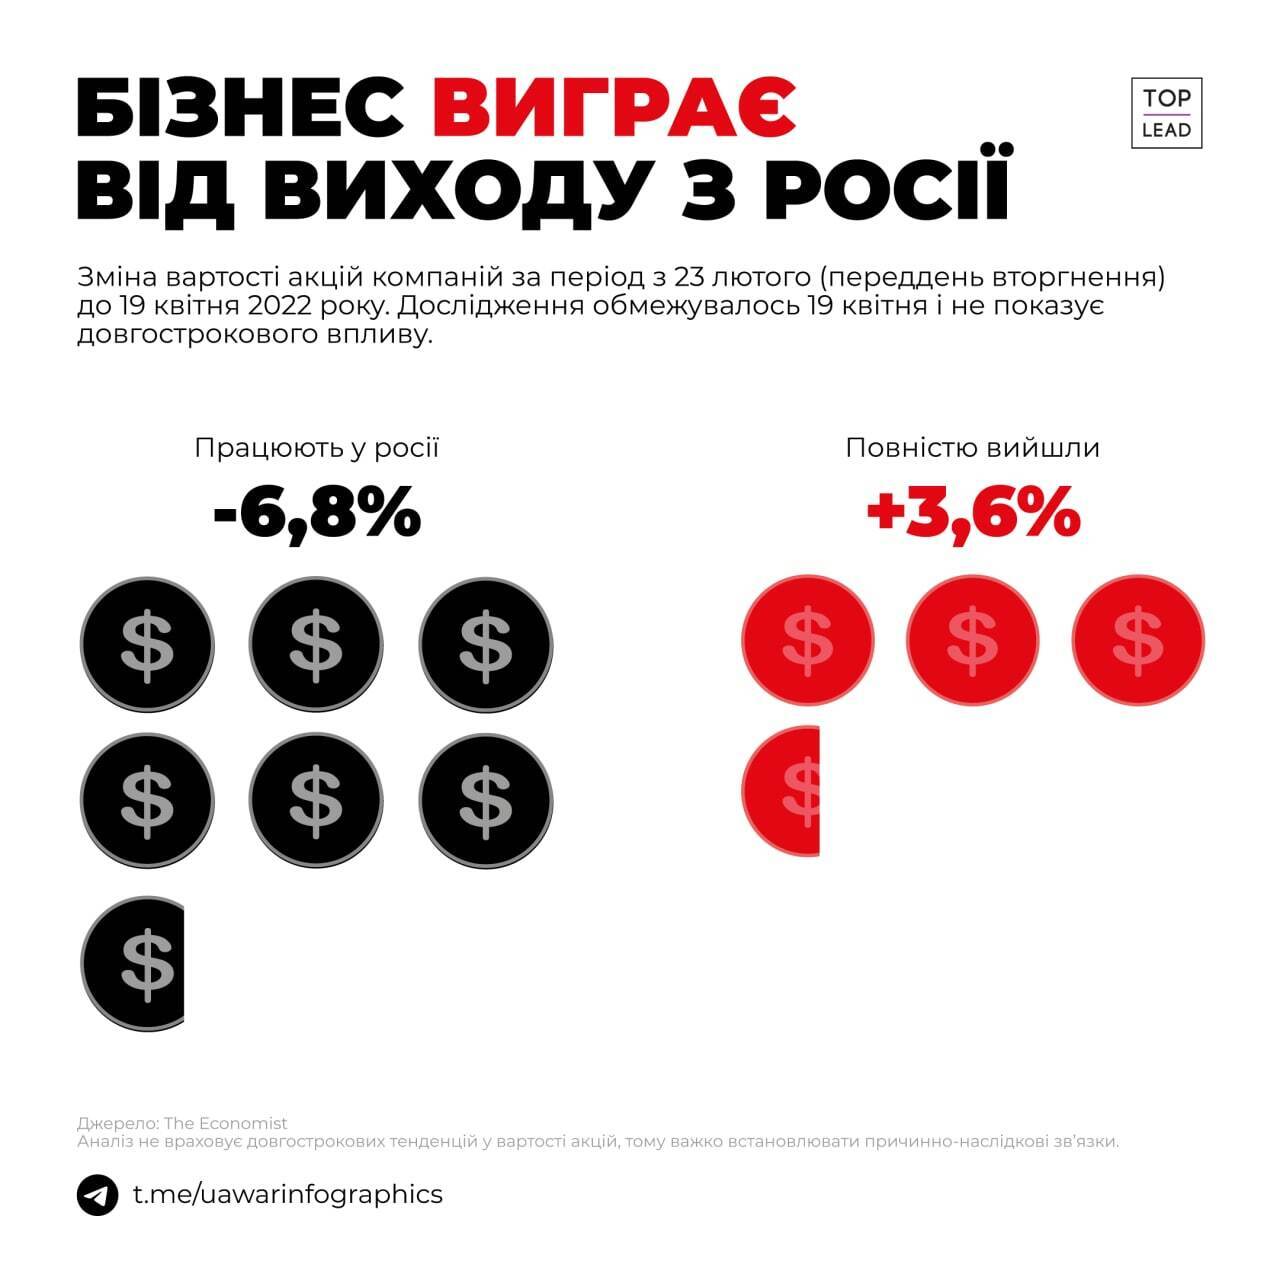 Вартість акцій компаній, що залишилися в Росії падають, а в тих, що пішли, зростає